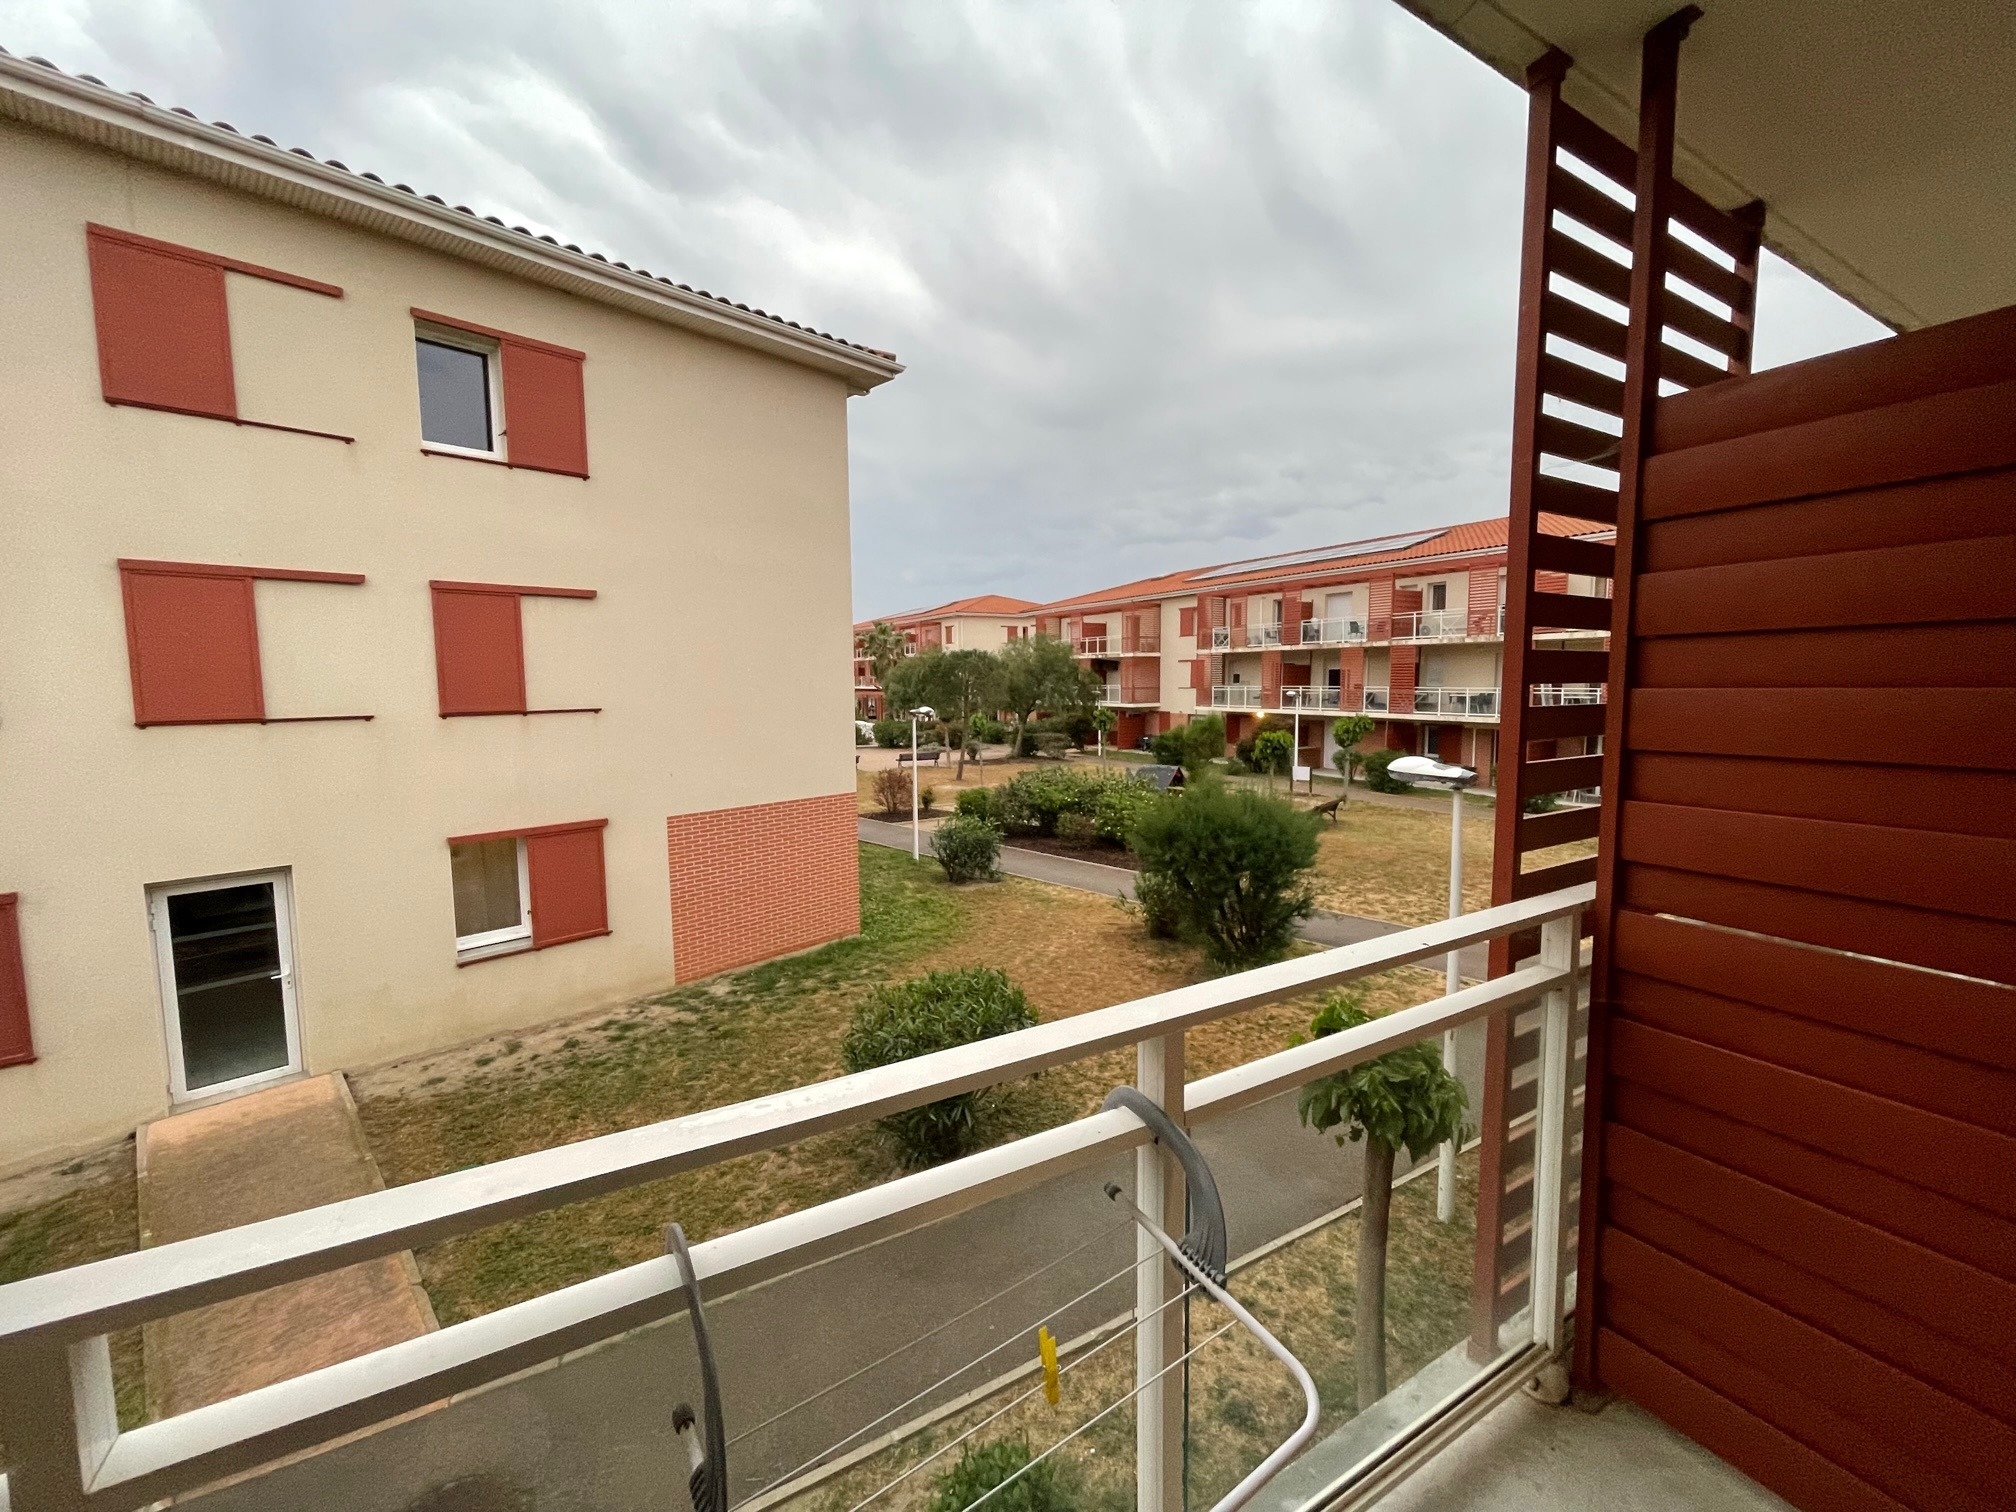 À vendre appartement de 39m2 à argelès-sur-mer (66700) - Photo 1'